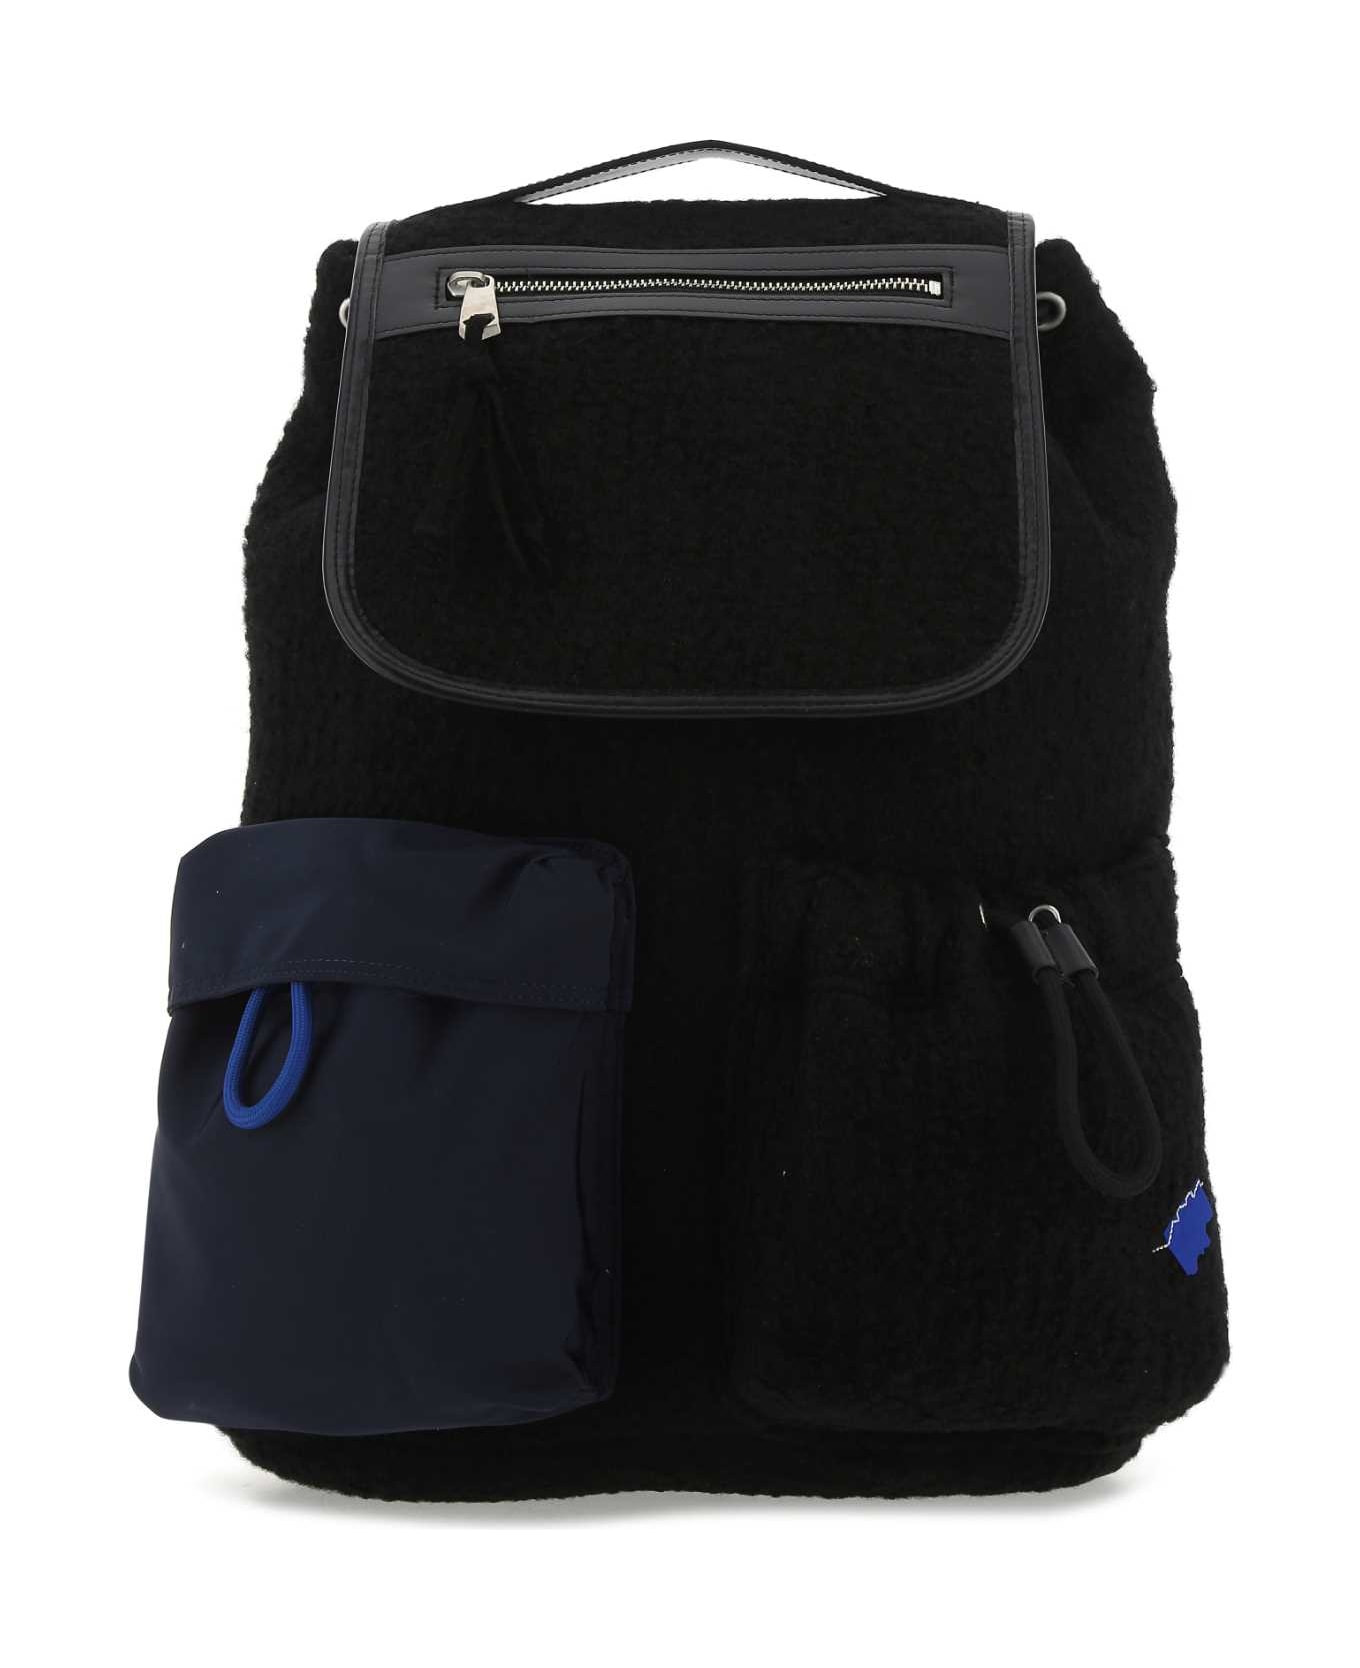 Ader Error Black Boucle Backpack - BLACK バックパック